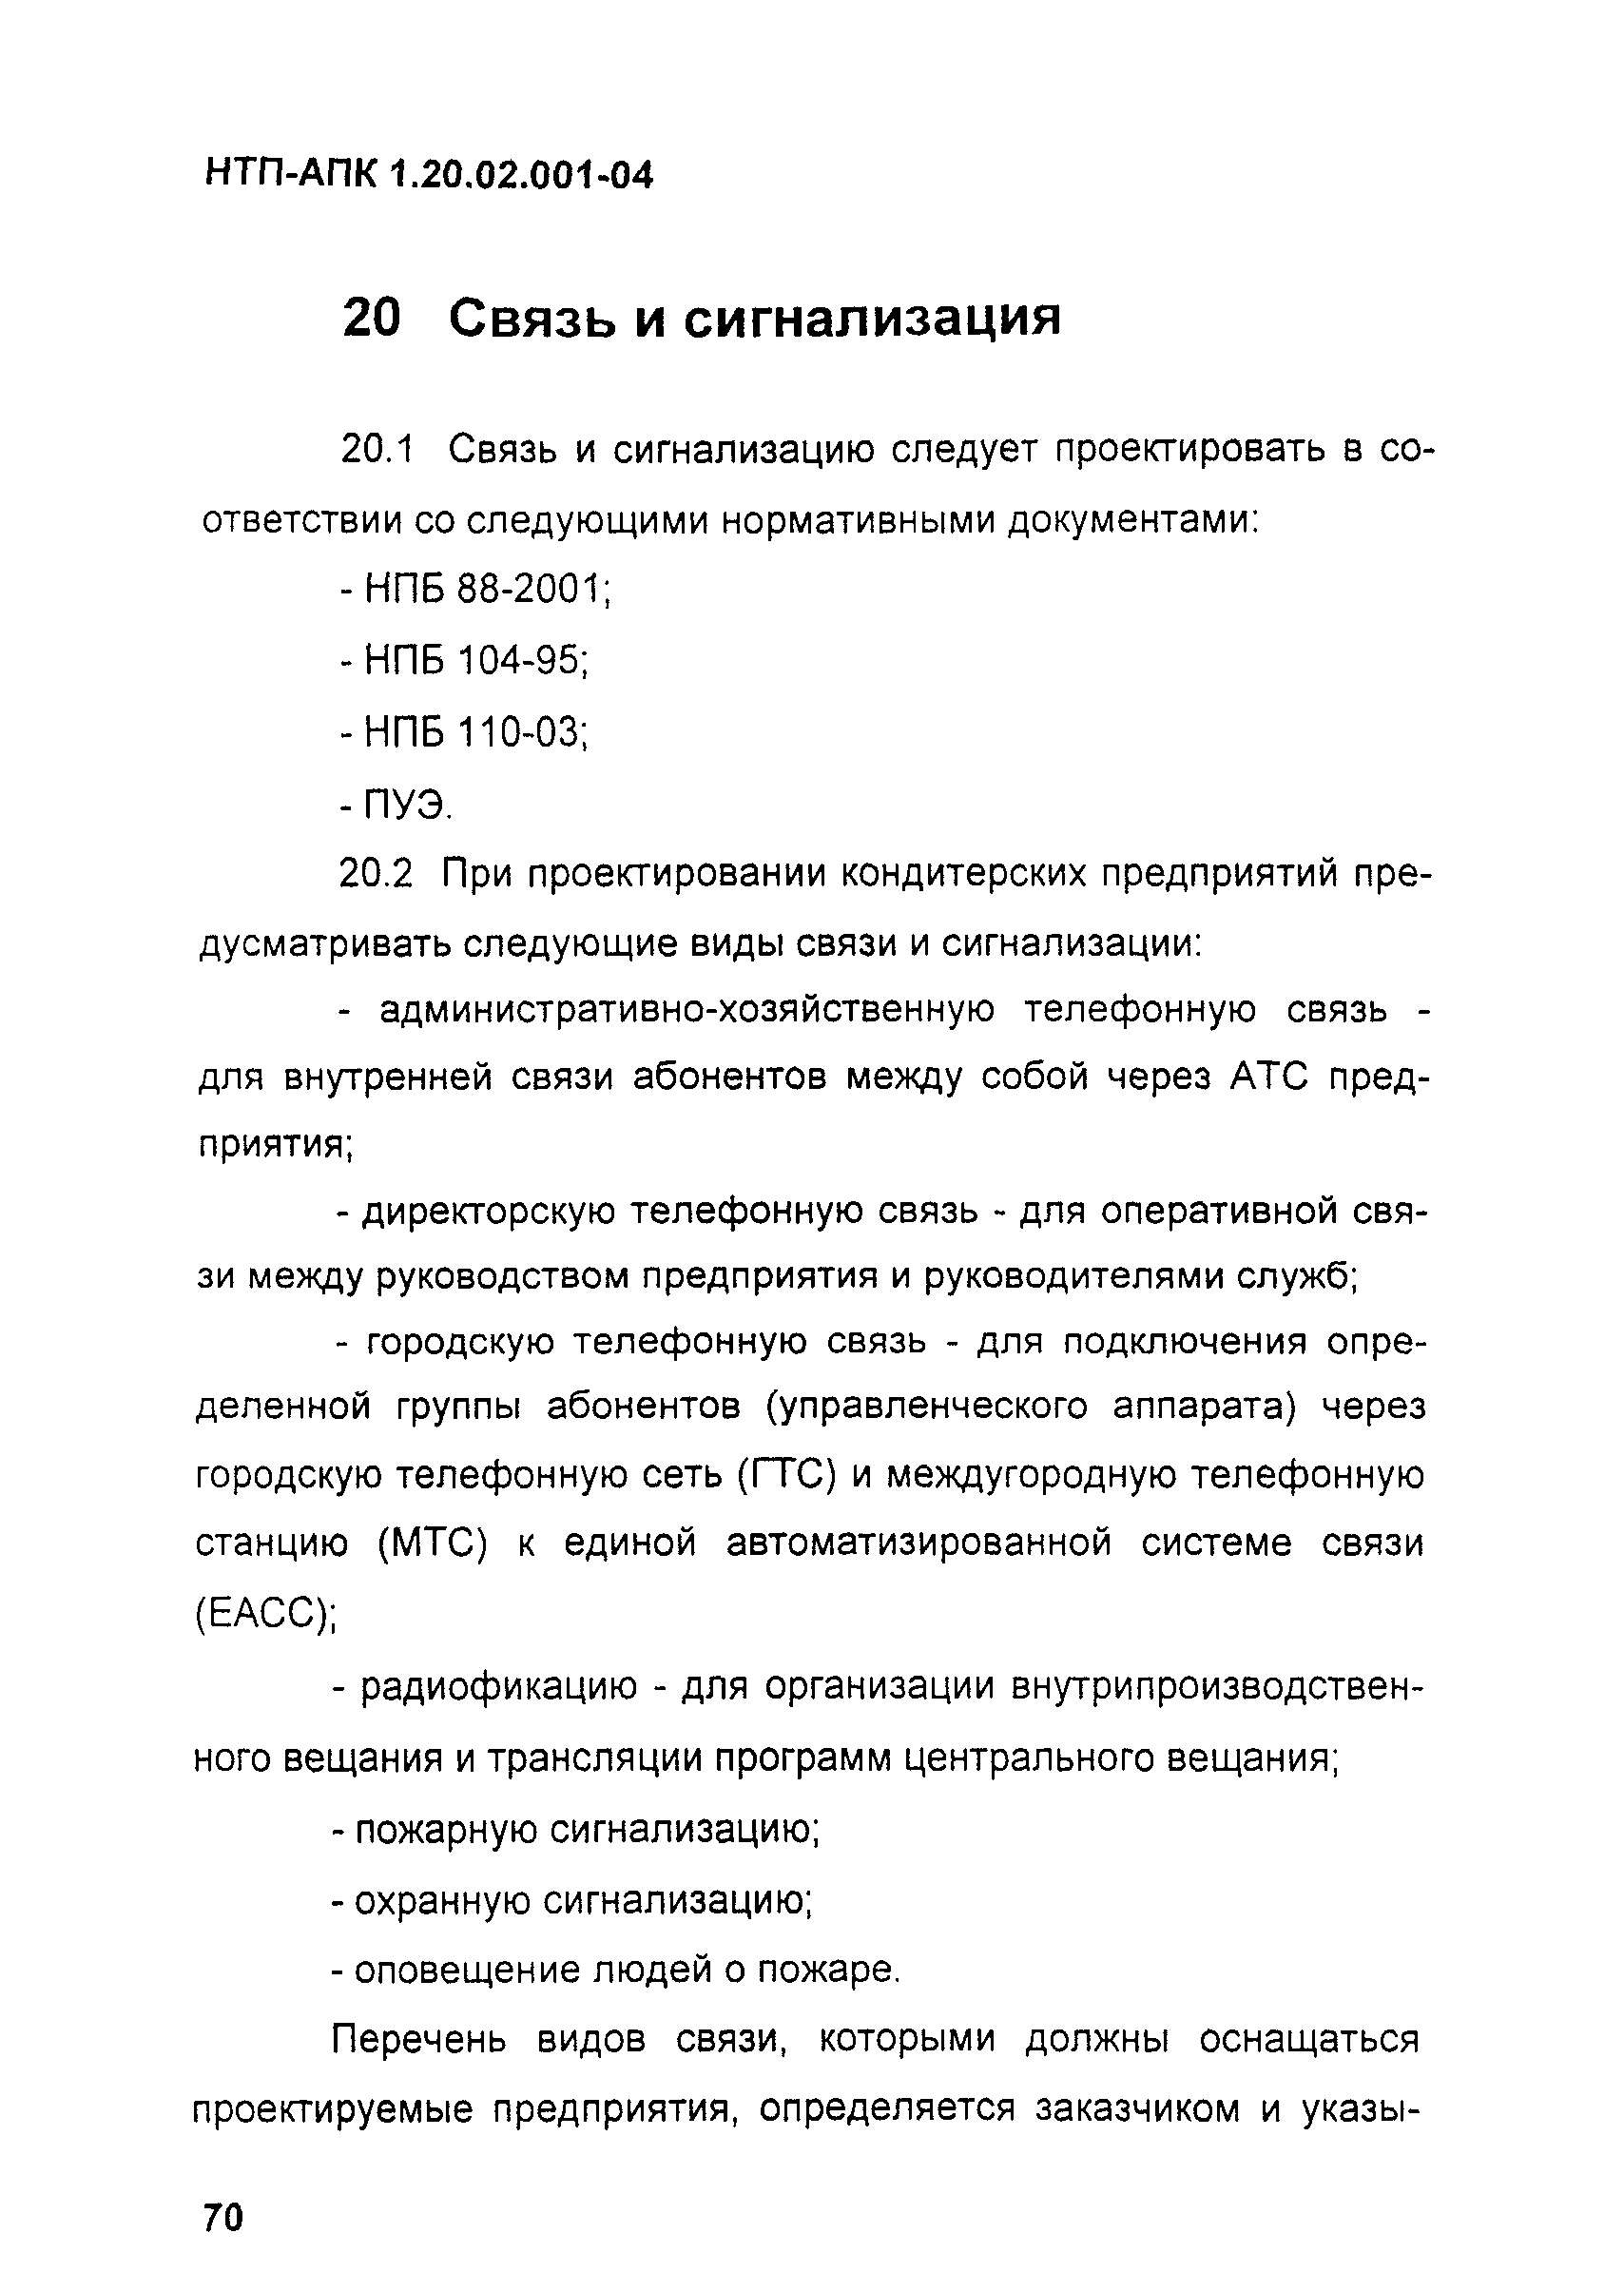 НТП-АПК 1.20.02.001-04